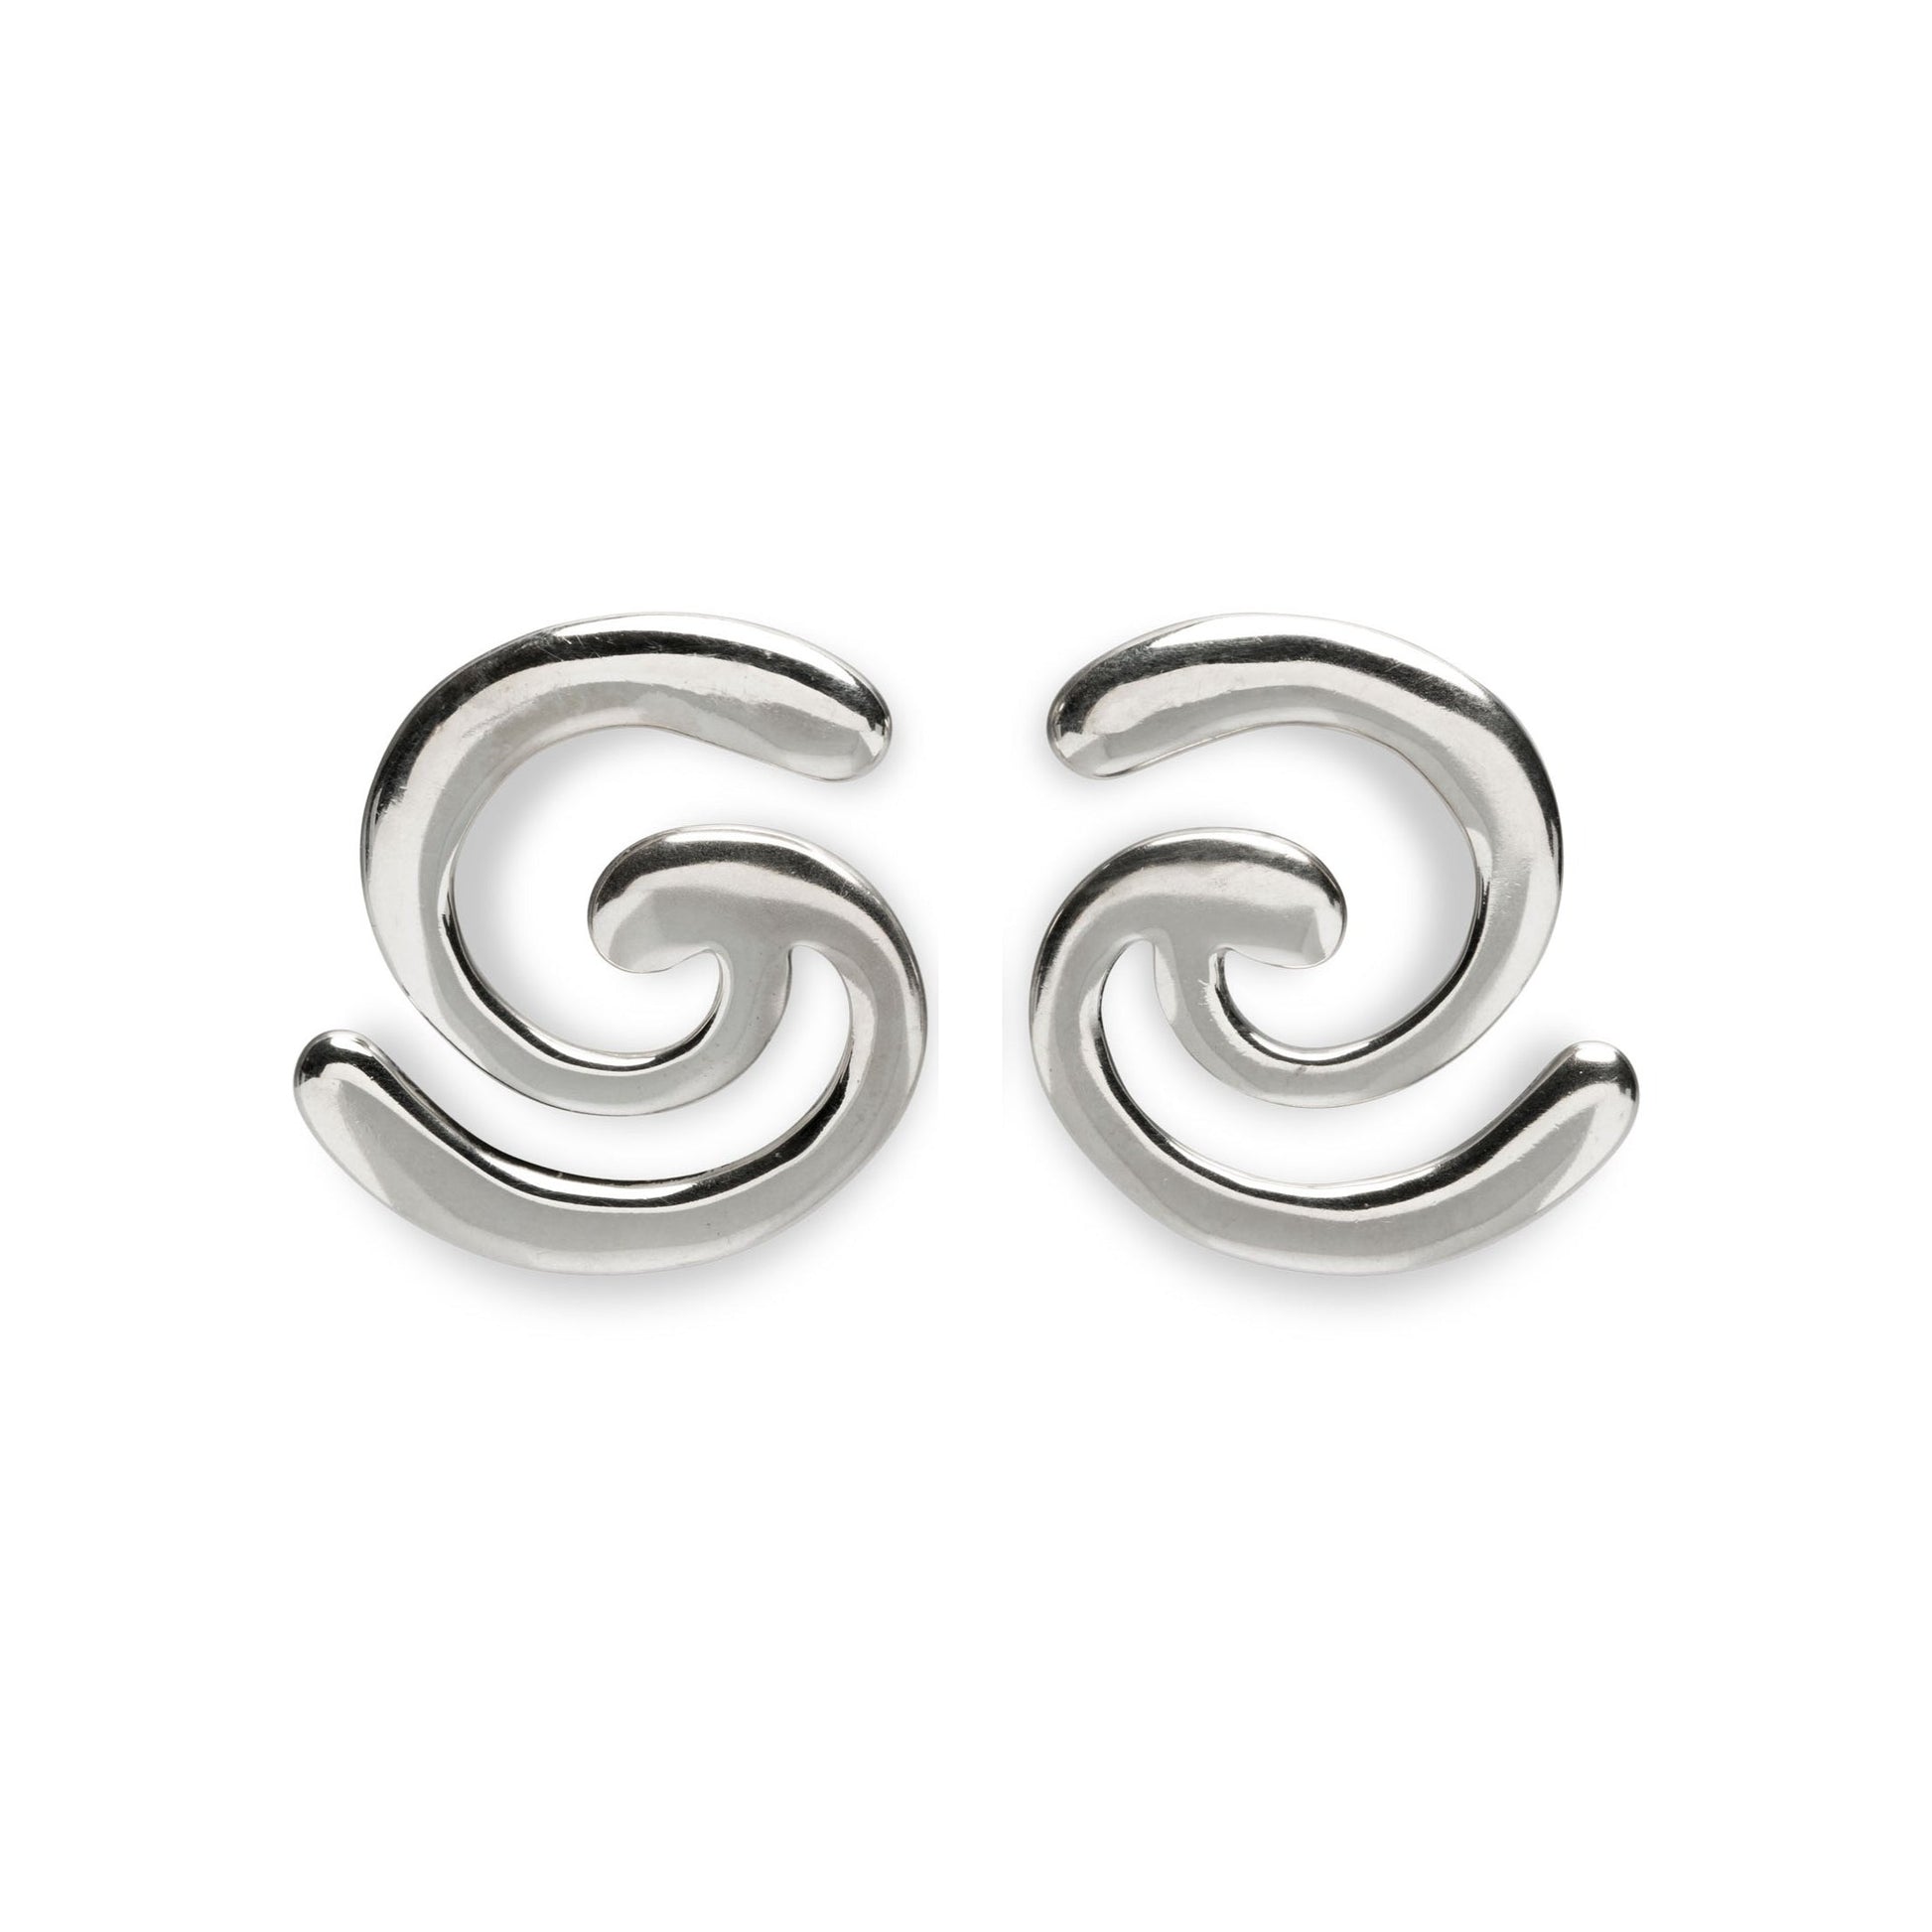 Pair of spiral silver earrings